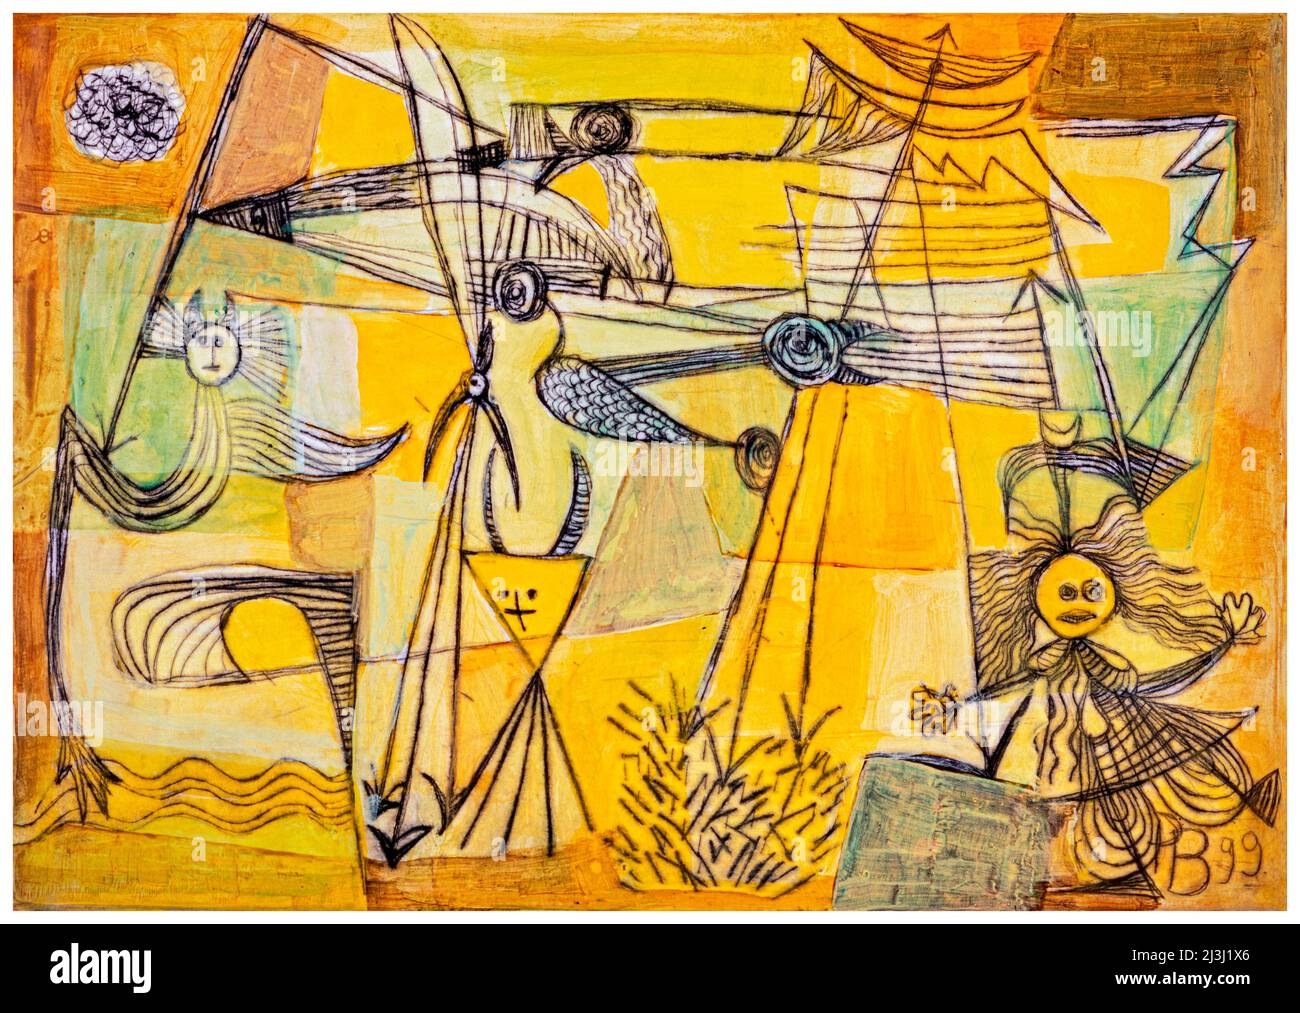 Pintura de Pia Bühler, grabado, acrílico Un salto en el aire transporta la figura de fantasía a un mundo fantástico con todo tipo de criaturas en el aire, todo en amarillo, que en realidad representa una mente aguda, intelecto, verdad, racionalidad y sabiduría, pero el amarillo también inspira el espíritu. Foto de stock